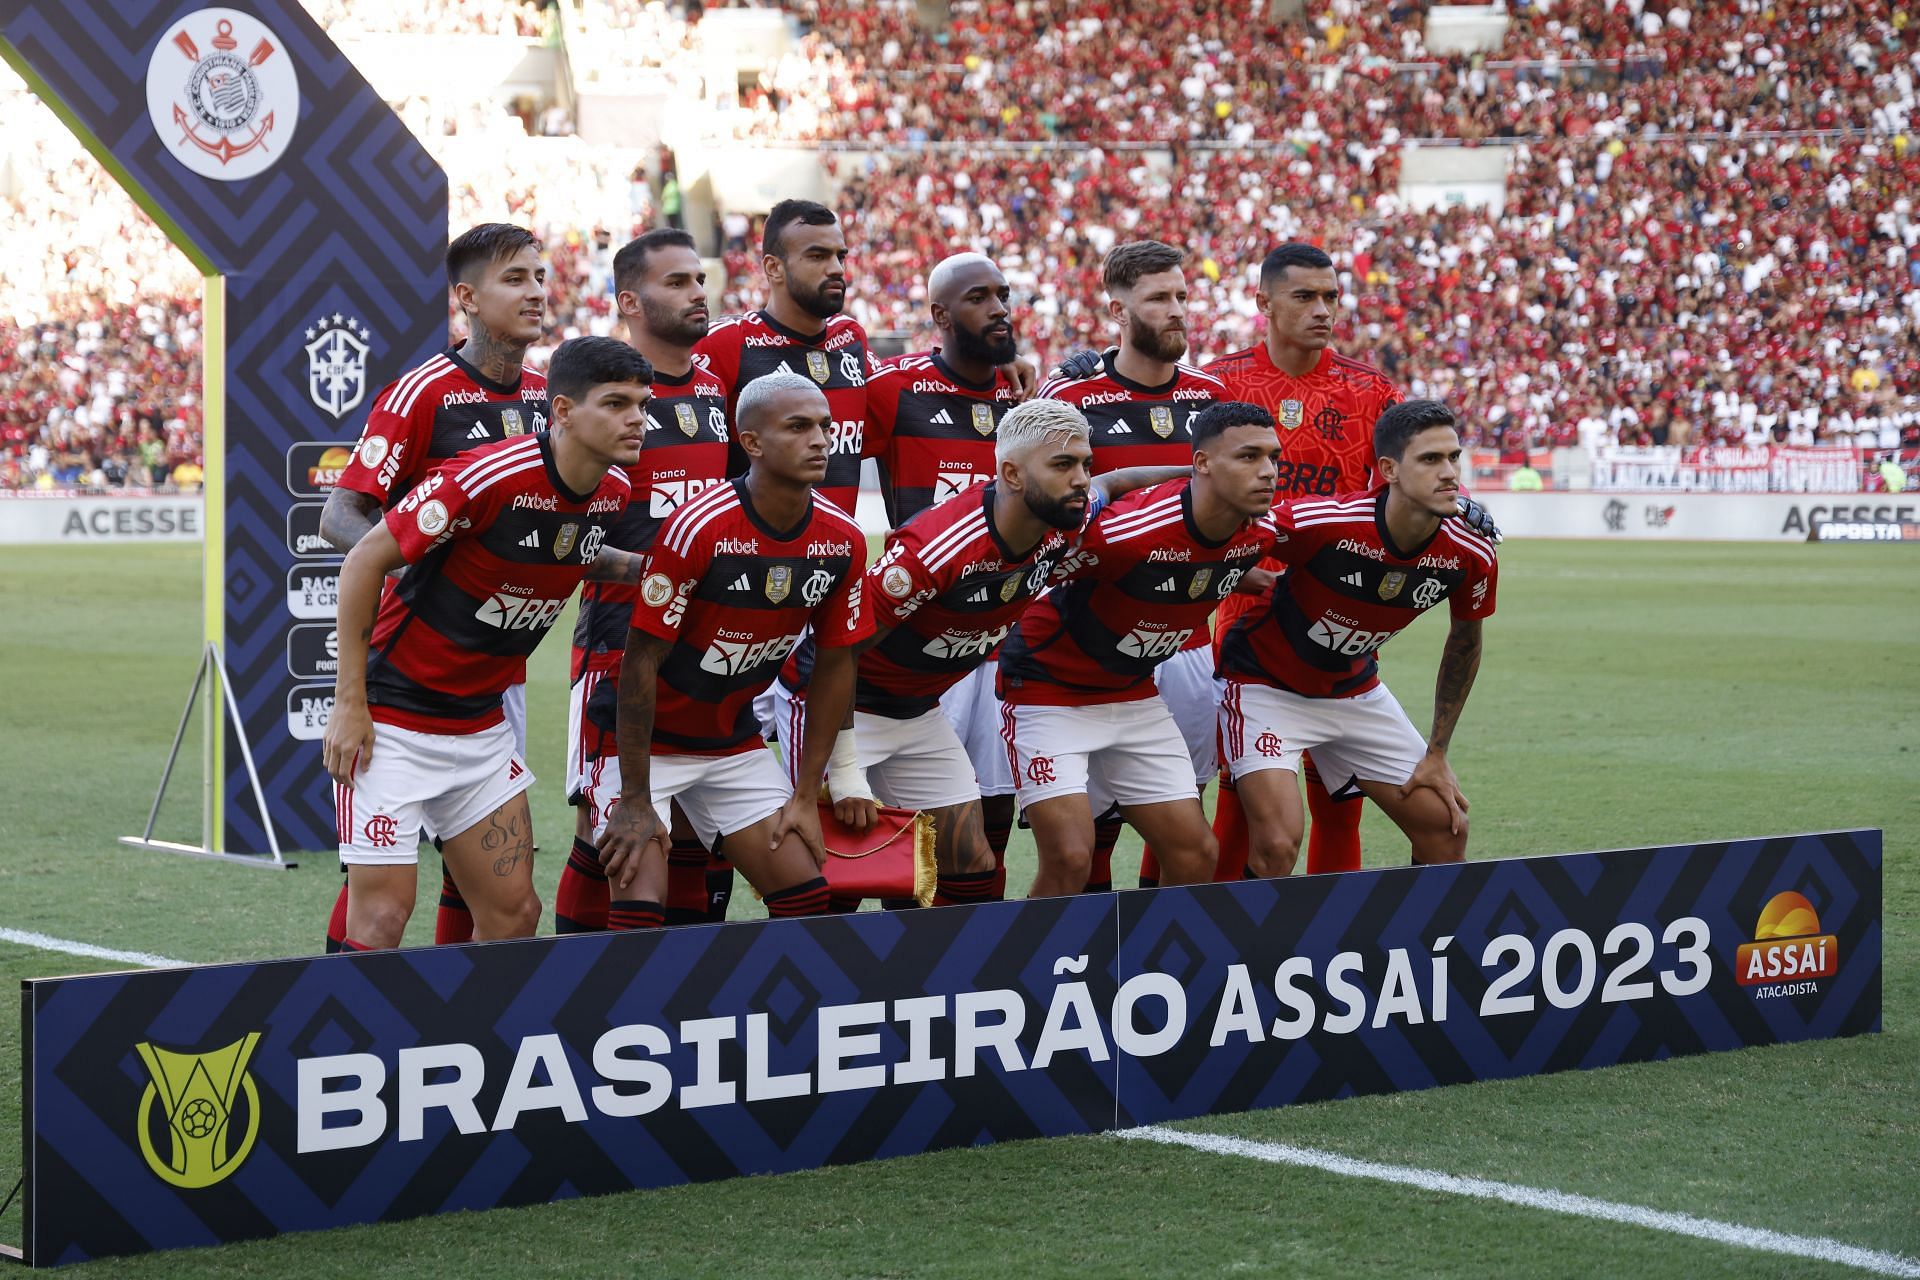 Flamengo v Corinthians - Brasileirao 2023